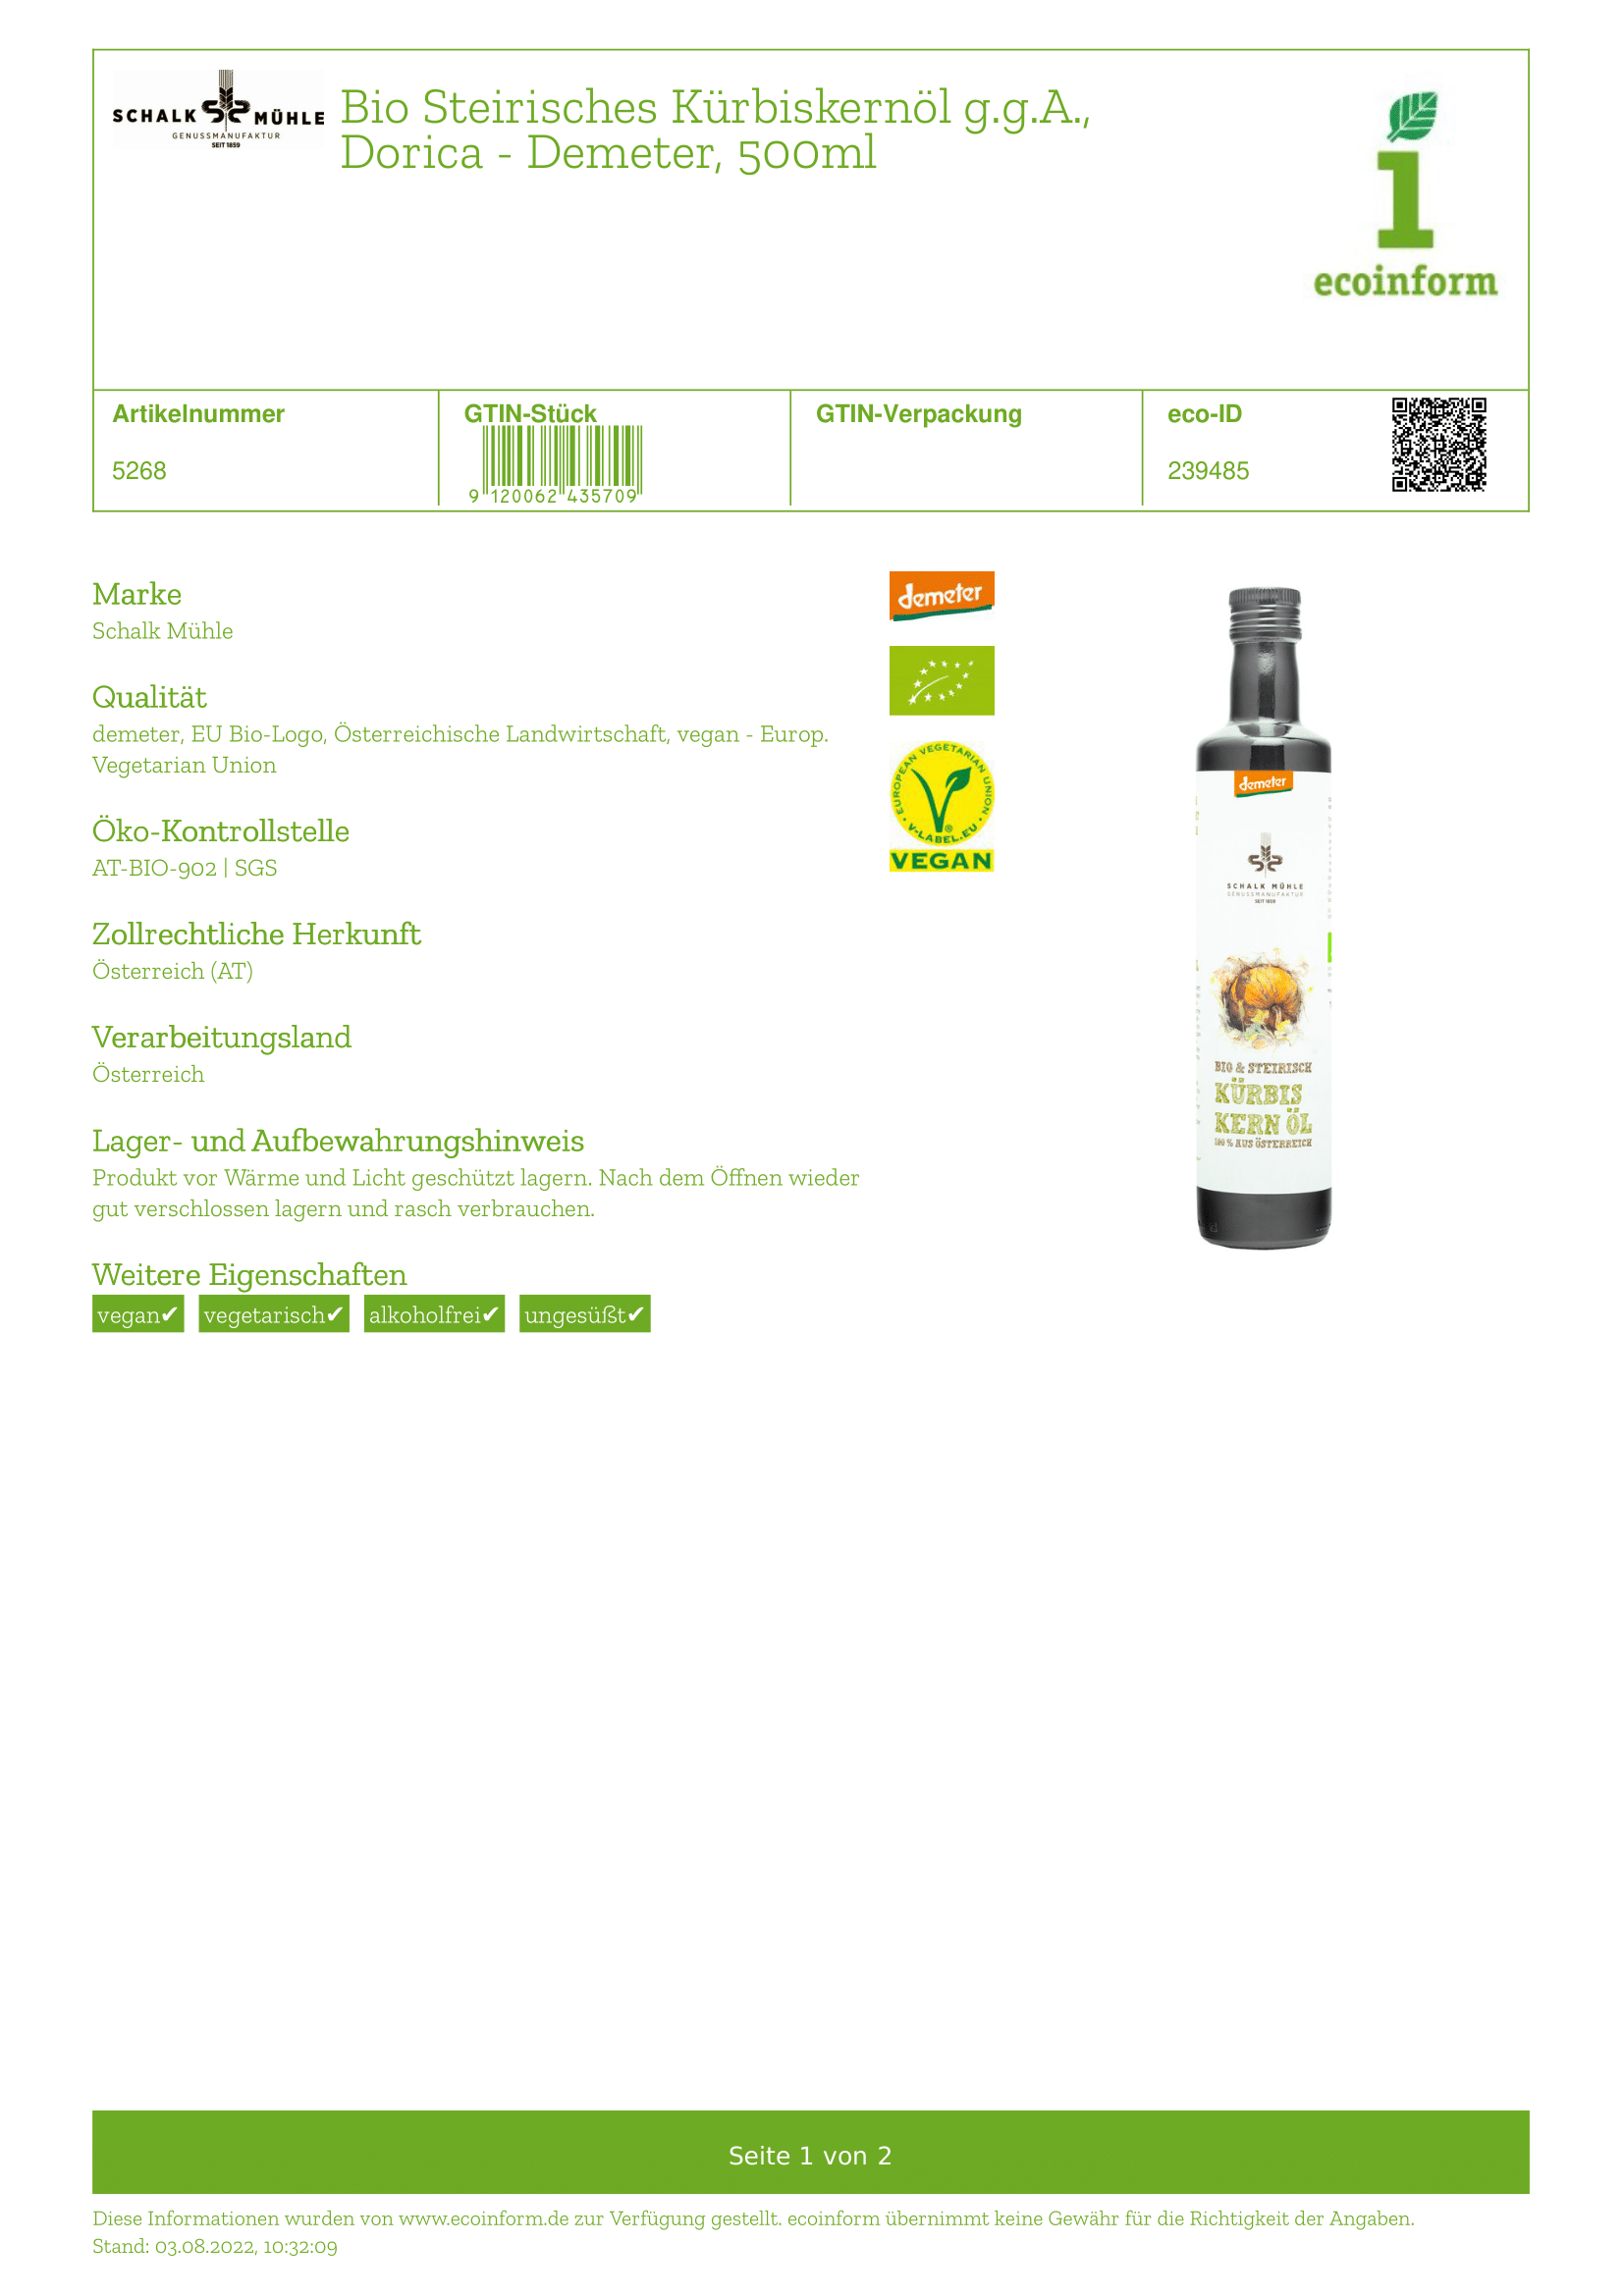 Steirisches Kürbiskernöl, demeter